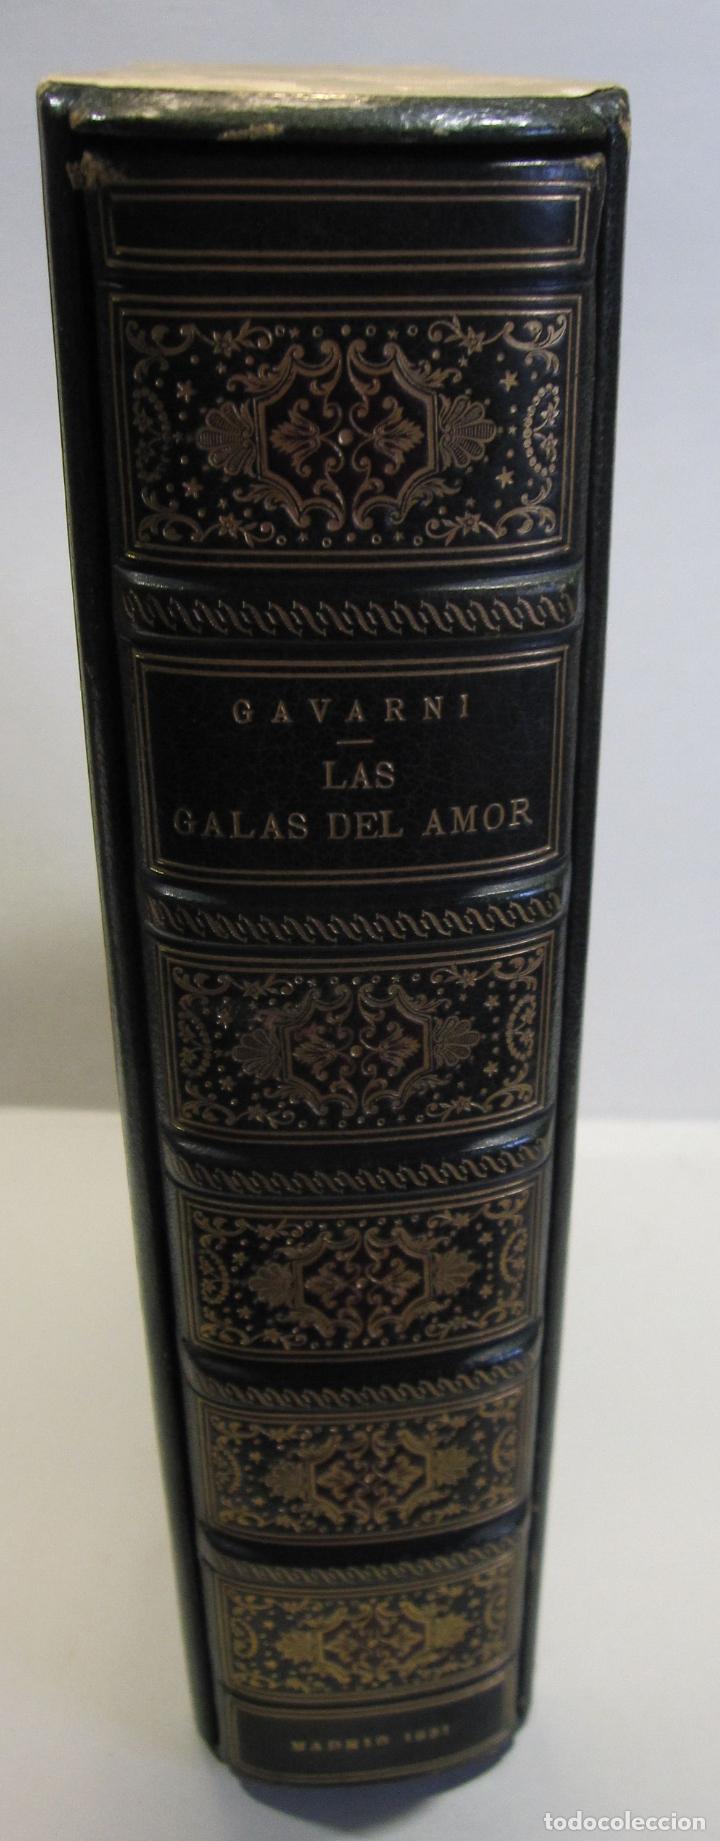 Libros antiguos: LAS GALAS DEL AMOR. FANTASIAS POR GAVARNI. MADRID, 1851. ENCUADERNACIÓN BRUGALLA (1947) - Foto 45 - 265338459